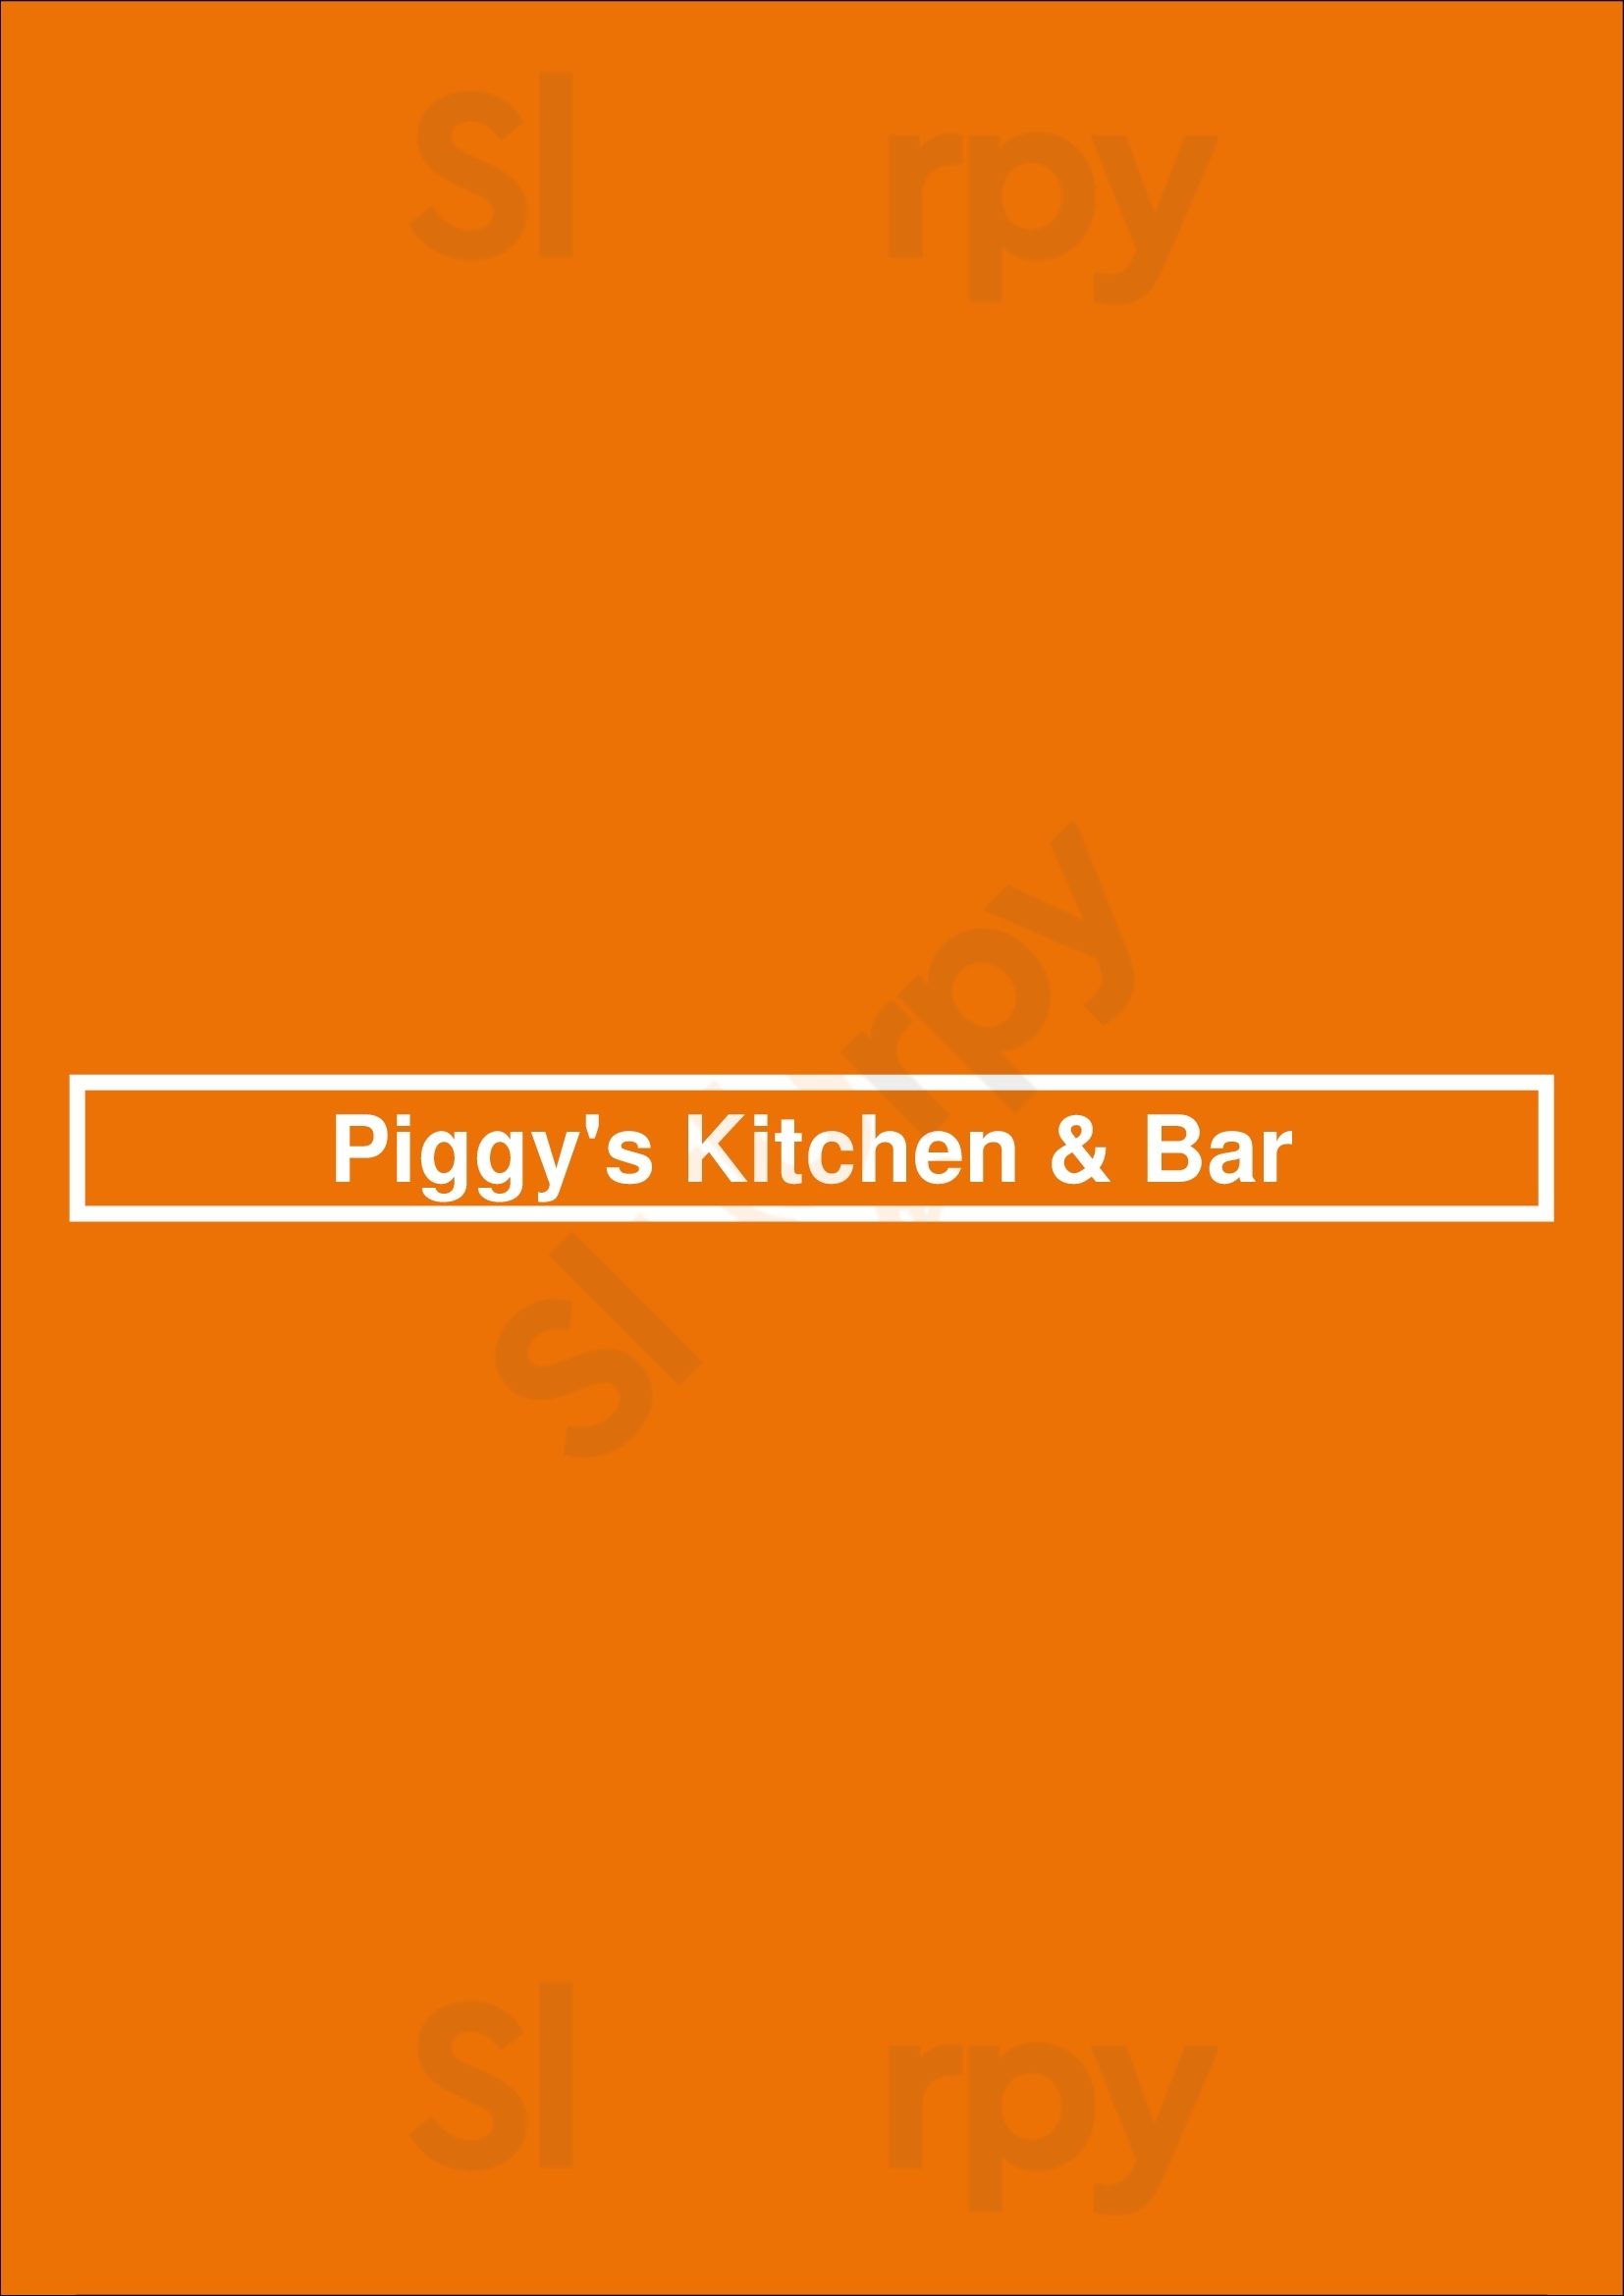 Piggy's Kitchen & Bar Houston Menu - 1